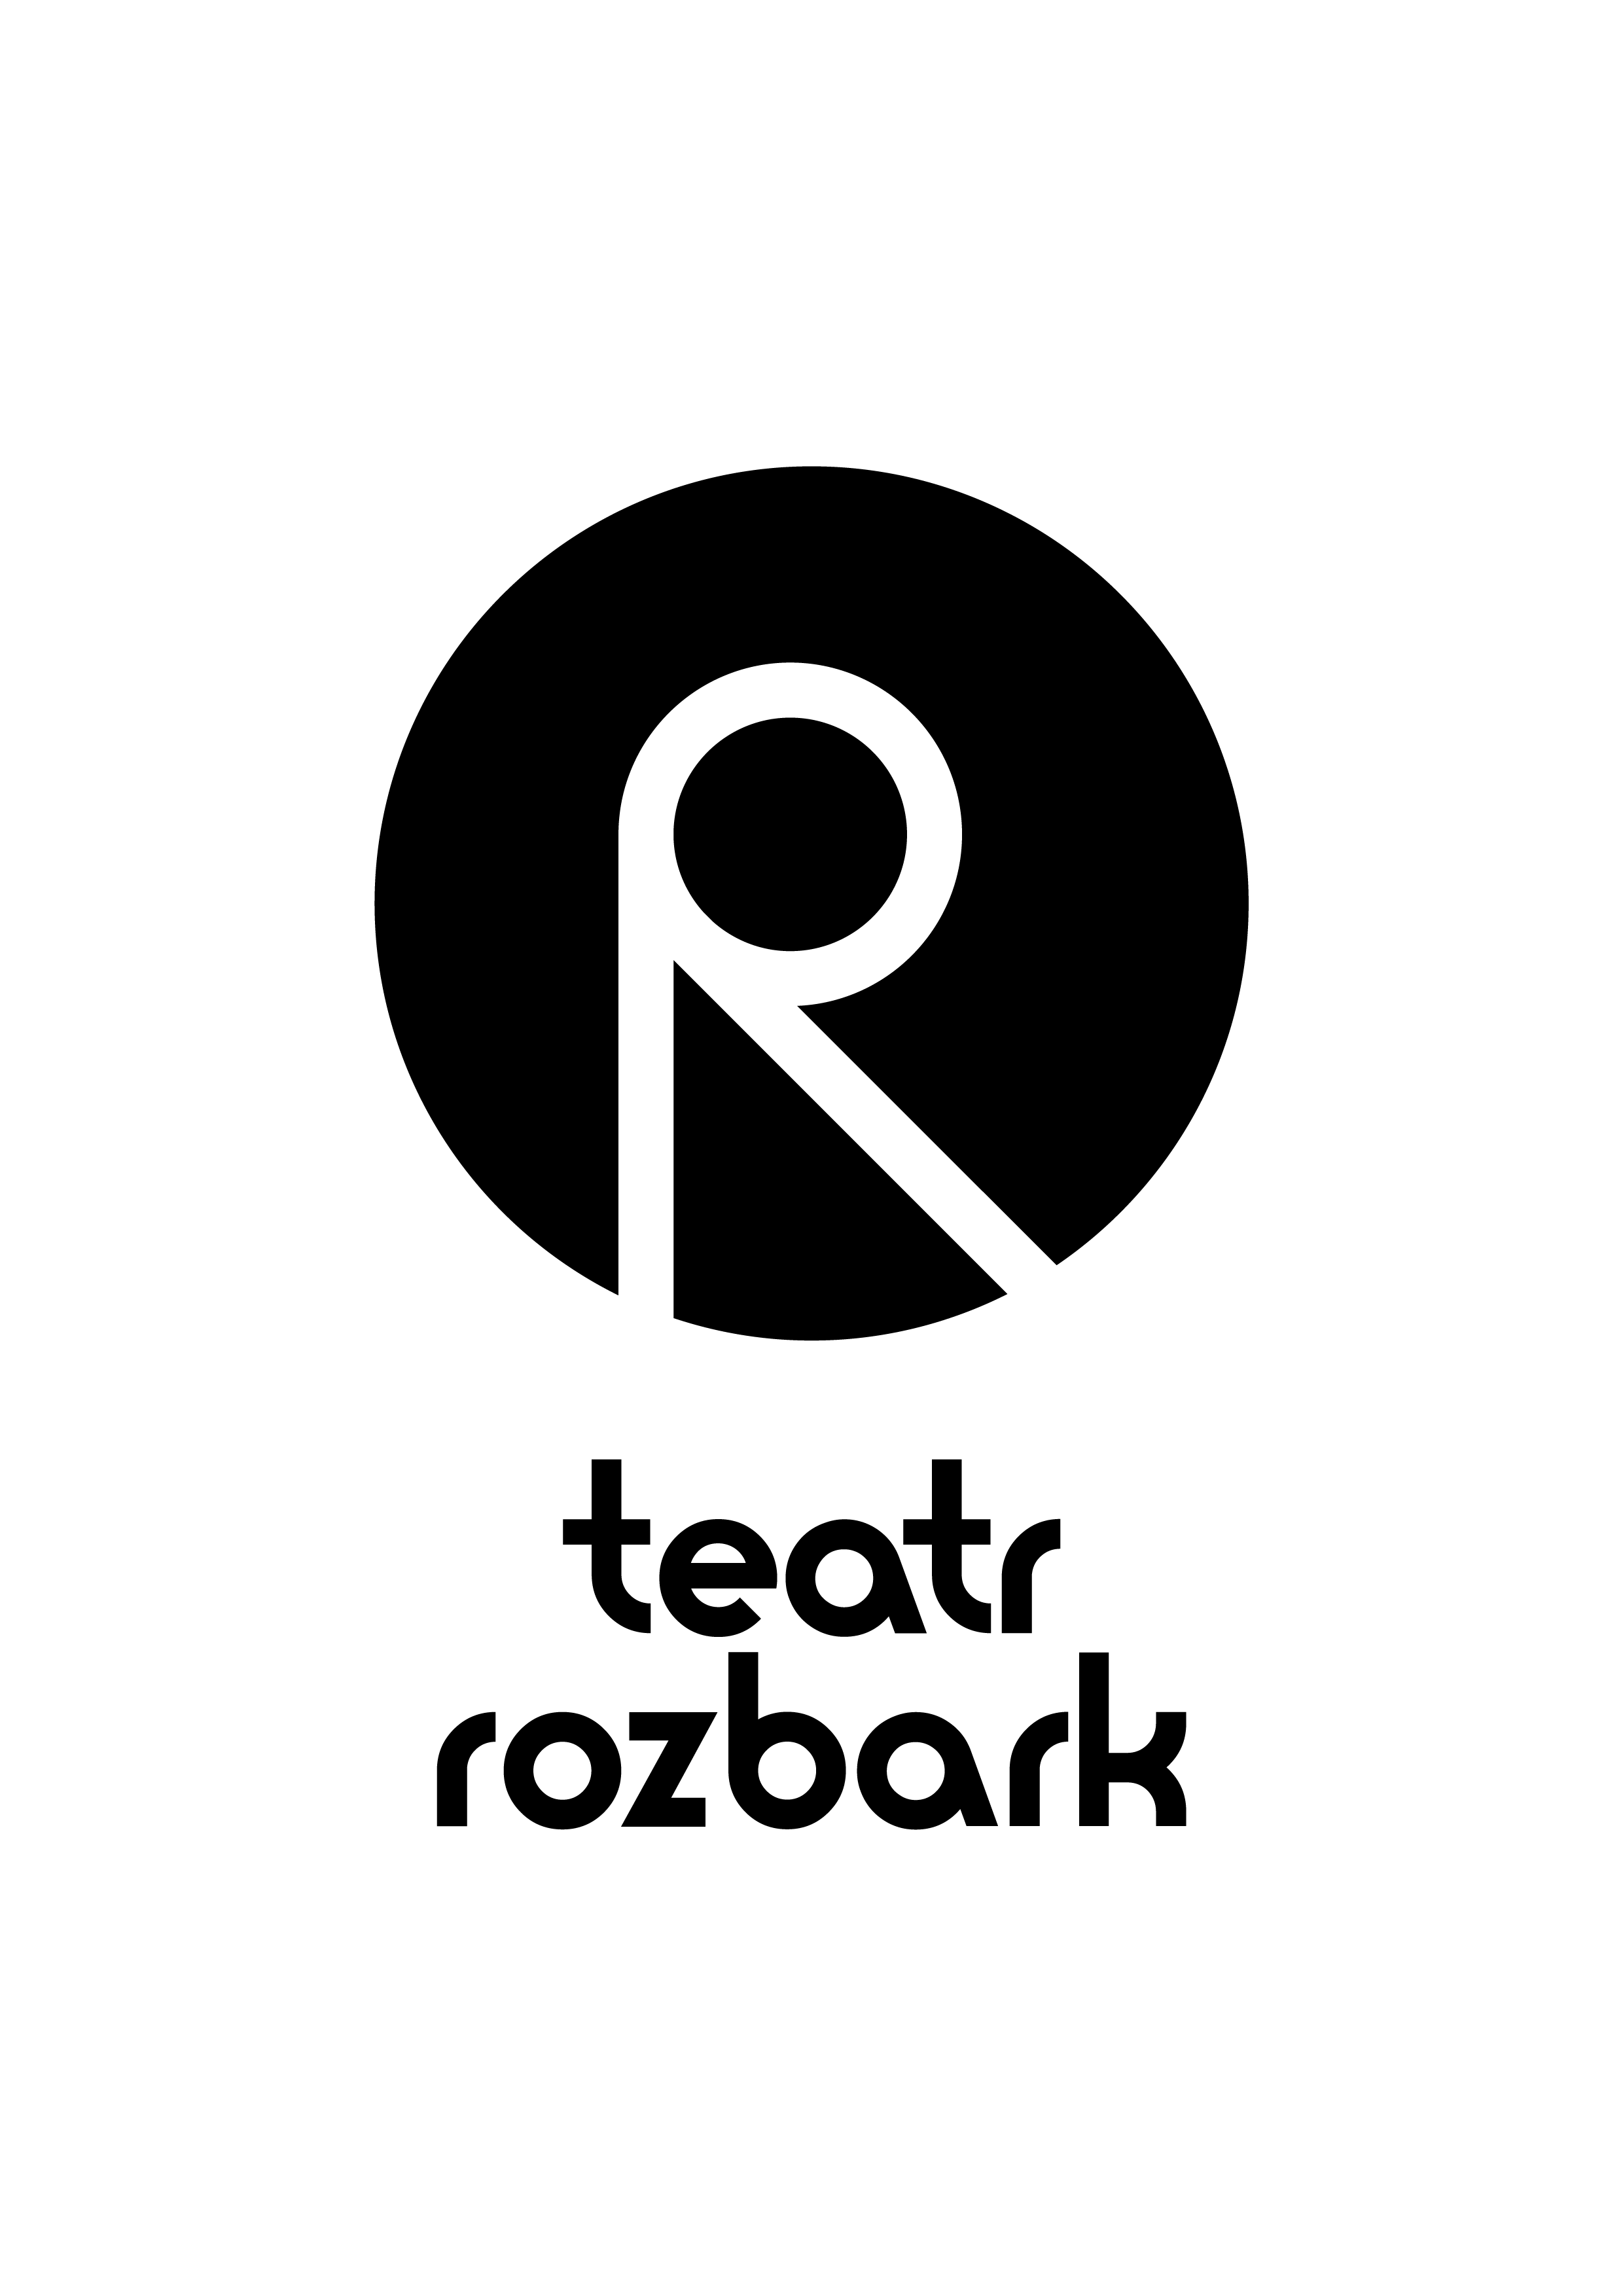 Rozbark_Nowe_Logo_Pion (1)